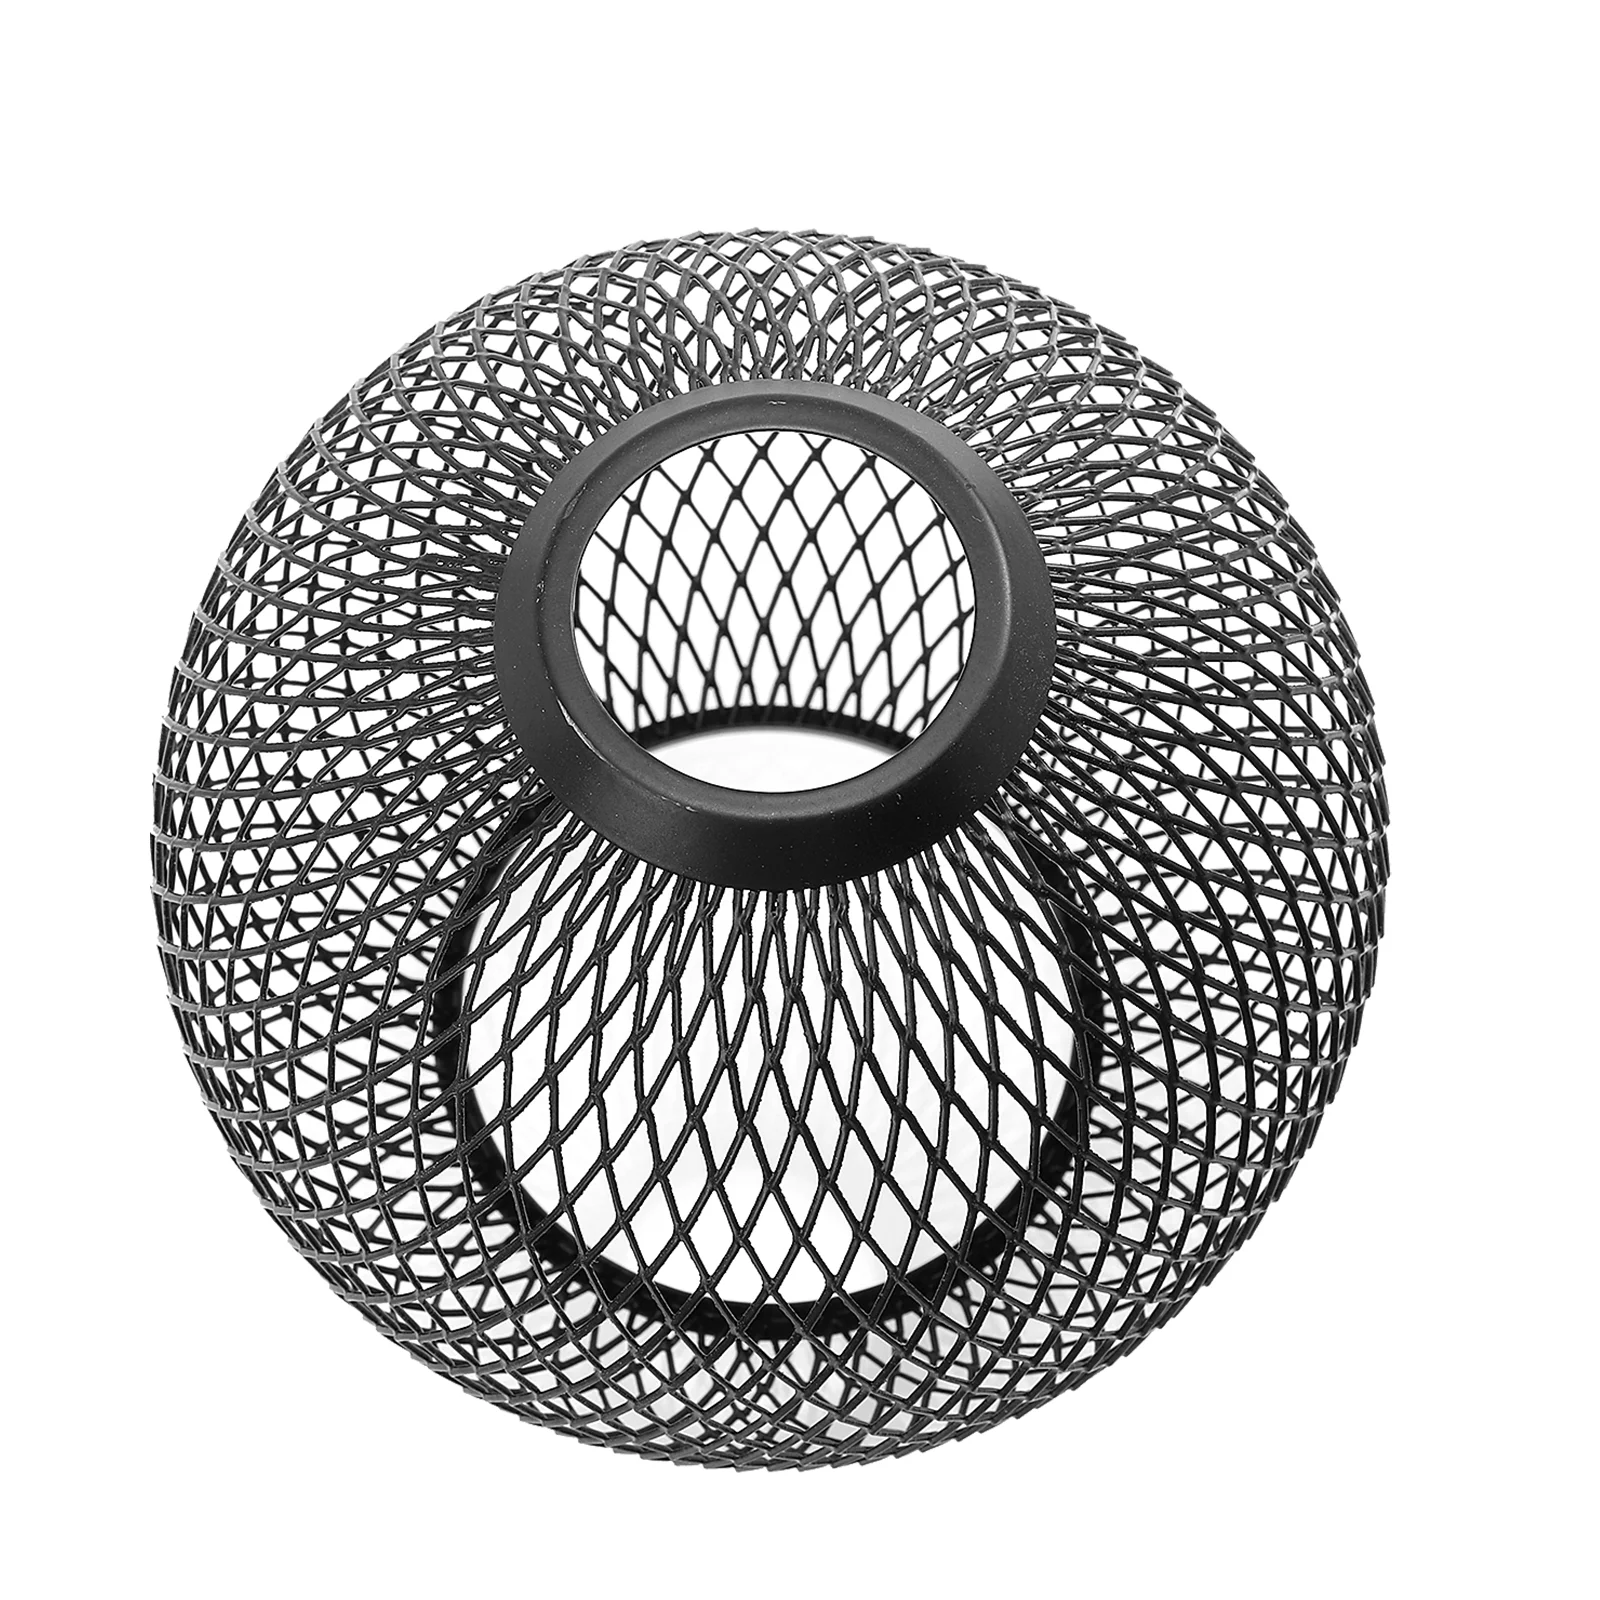 

Абажур Корпус Полый Сферический Глобус потолочное покрытие декоративный Железный орнамент